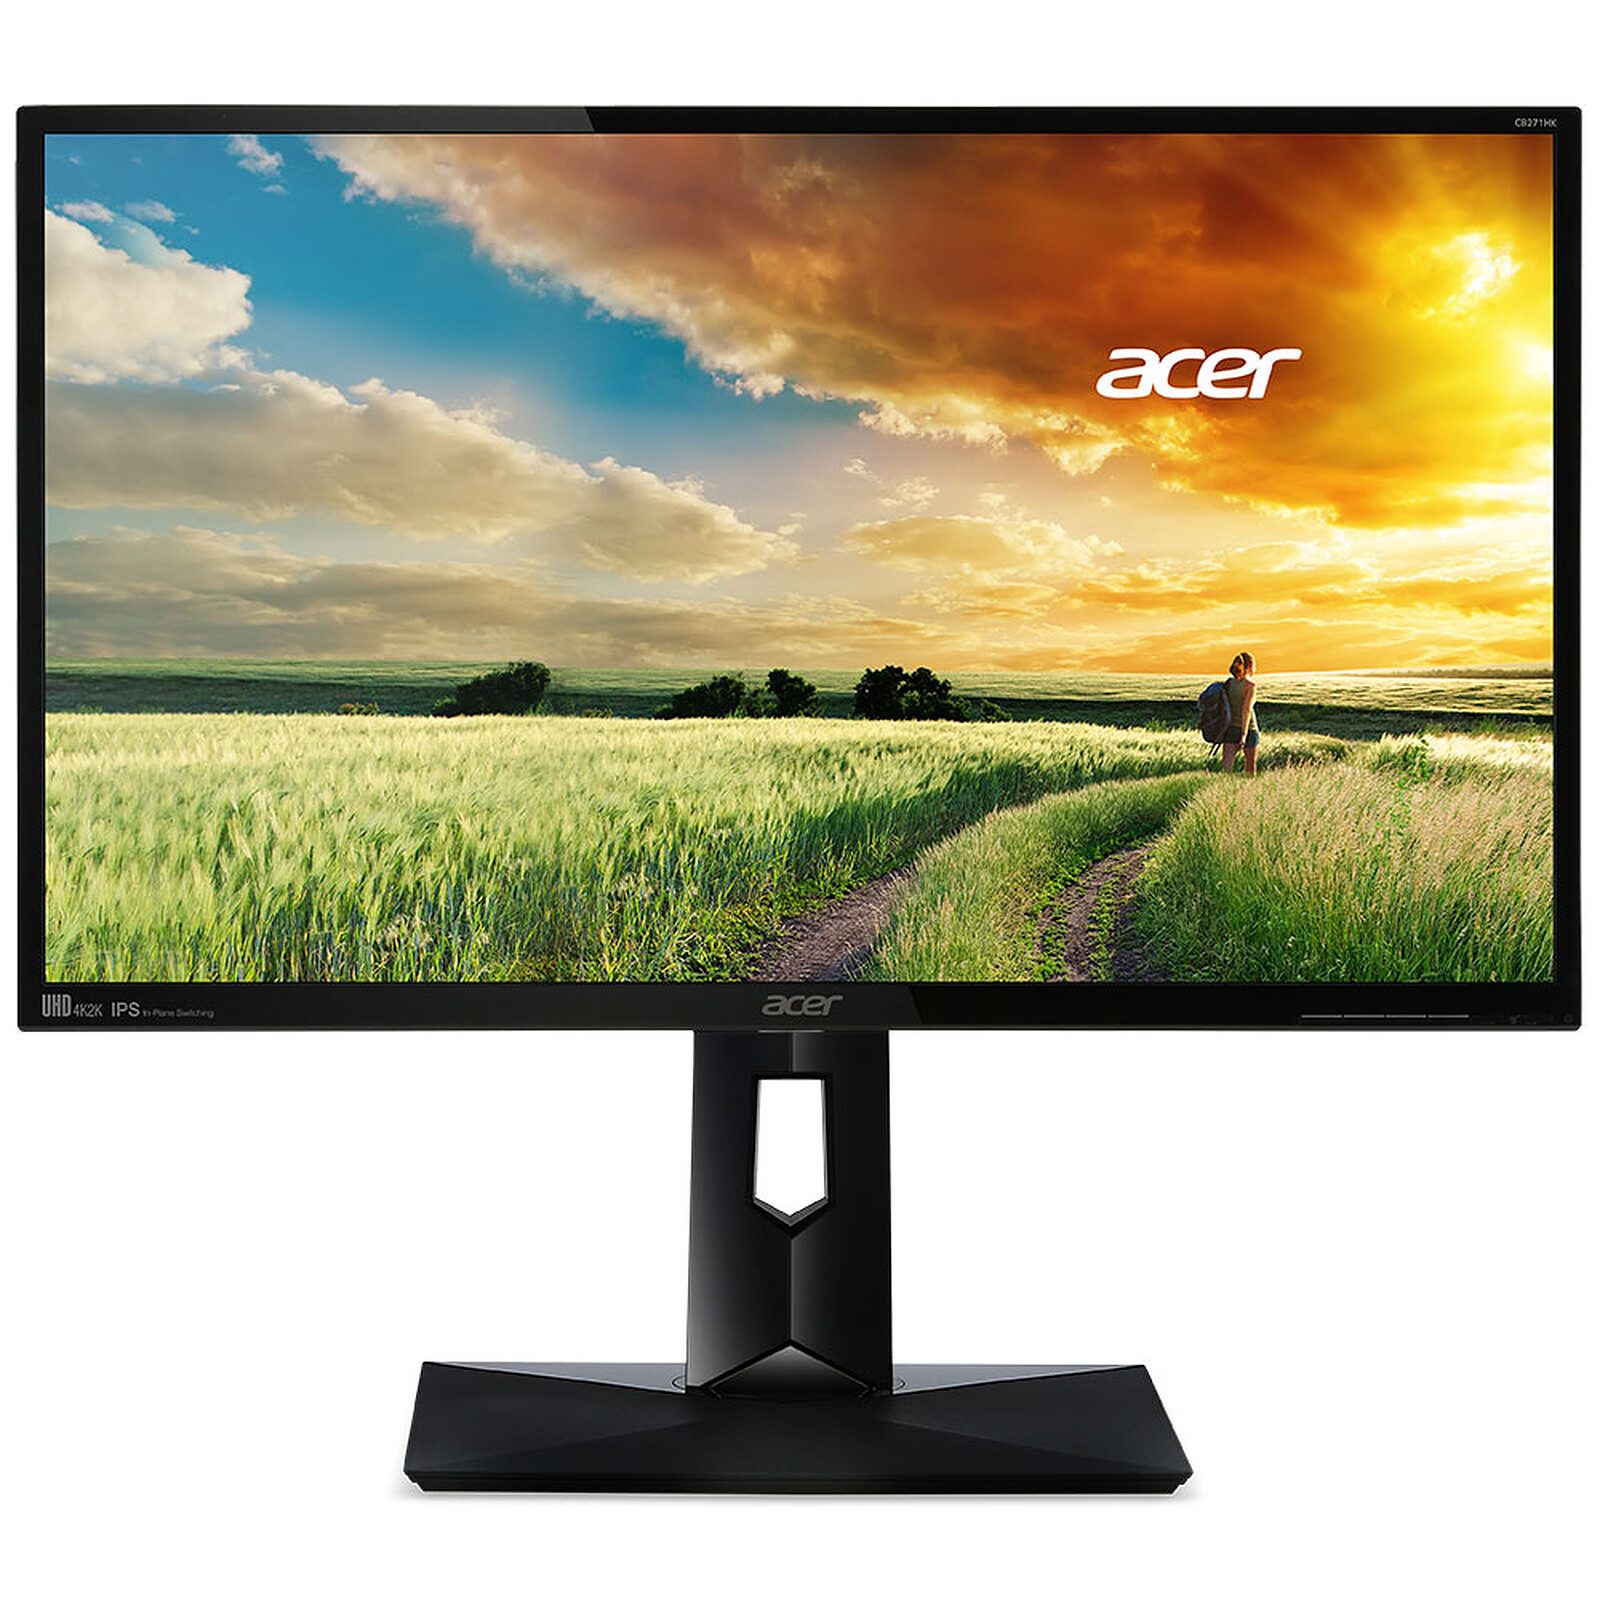 Acer 27 LED - KG271Cbmidpx - Ecran PC - Garantie 3 ans LDLC